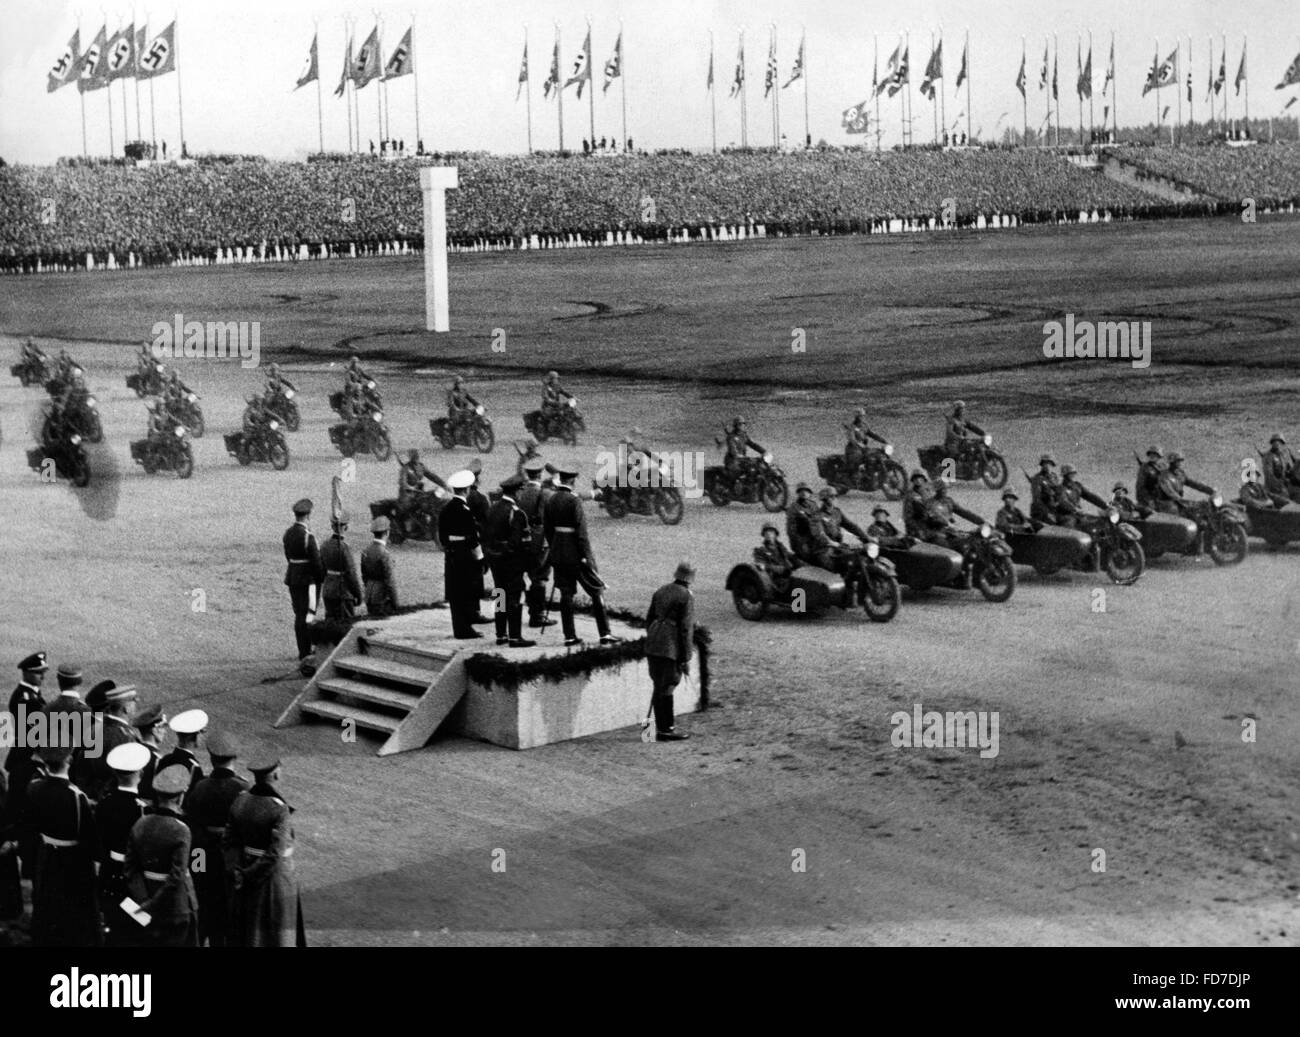 Les troupes de moto le jour de la Wehrmacht au cours de la Nuremberg, 1937 Banque D'Images